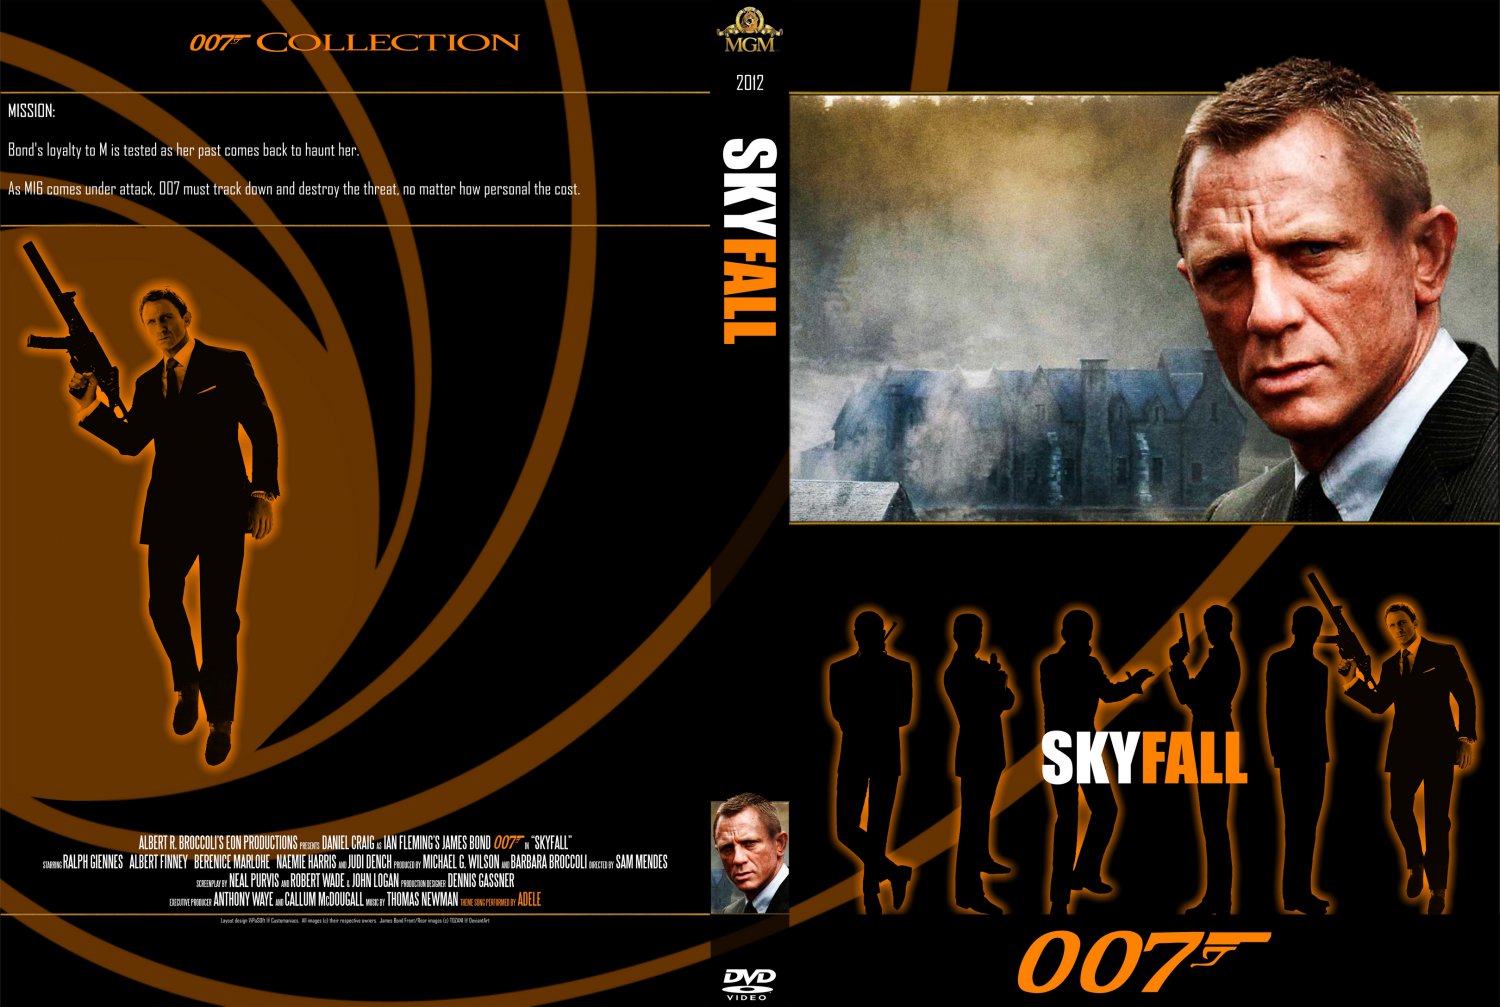 Skyfall - Movie DVD Custom Covers - 23 - 007 Skyfall ...
 Skyfall Dvd Cover